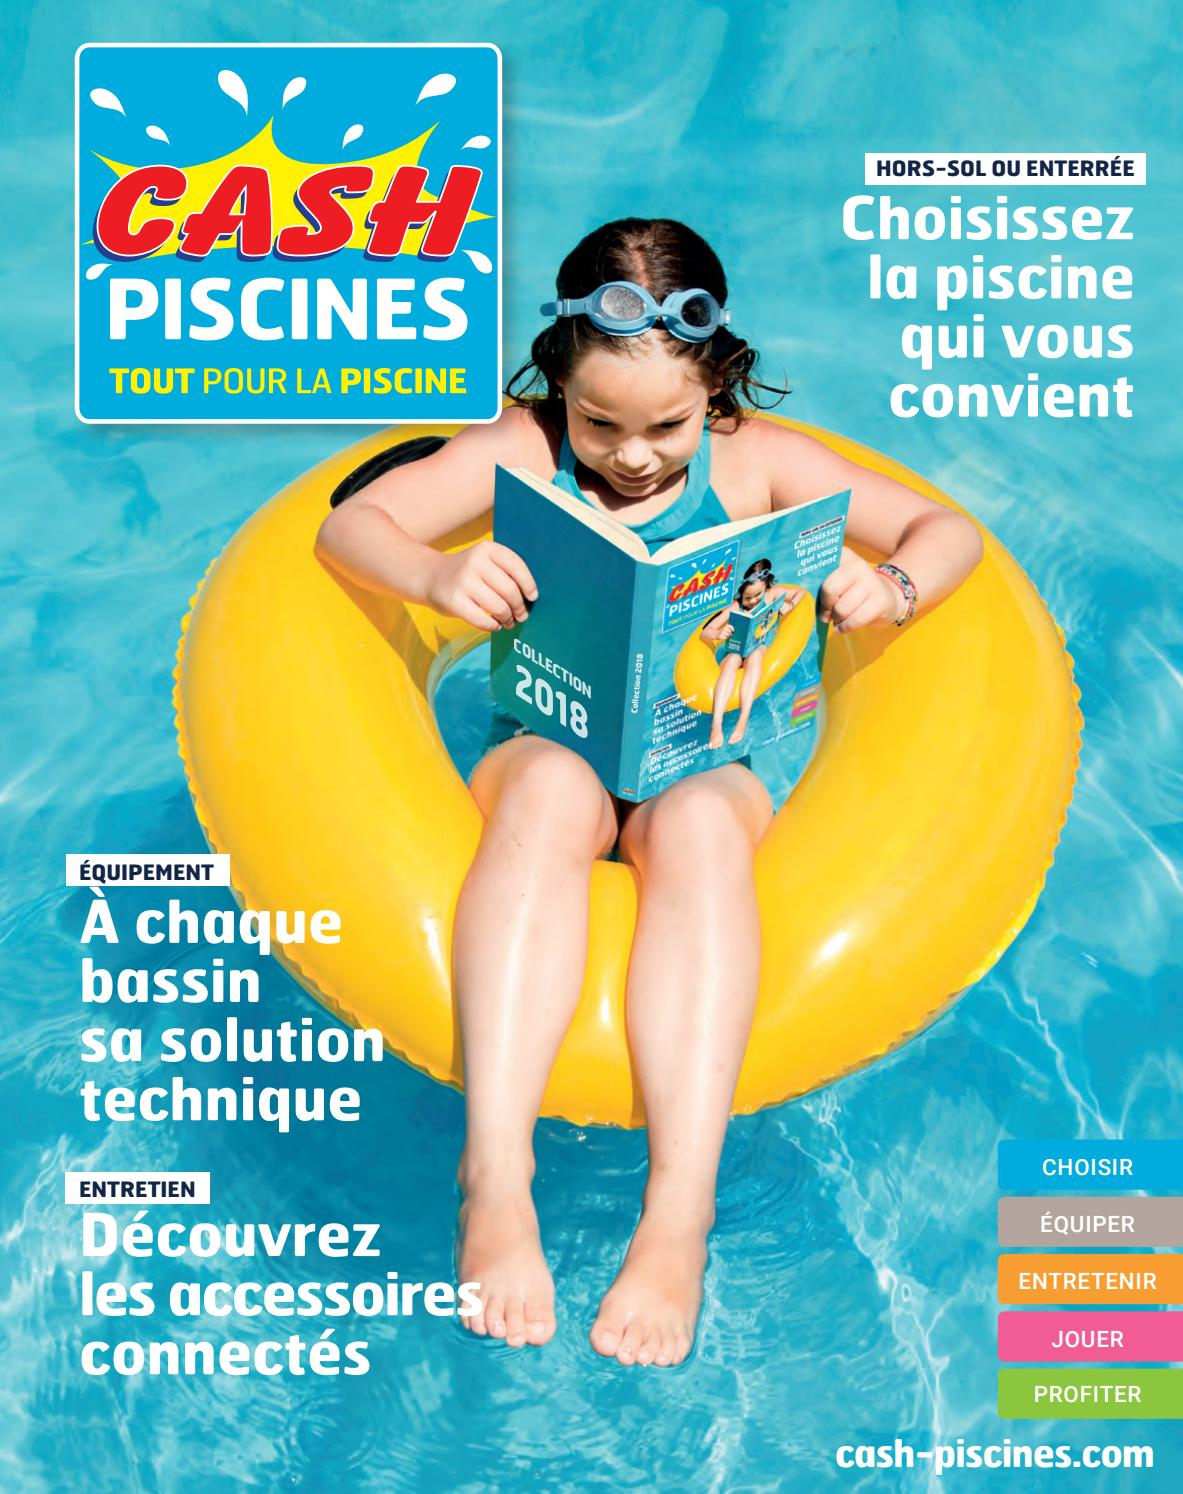 Catalogue Cash Piscine 2018 By Octave Octave - Issuu à Cash Piscine Angers